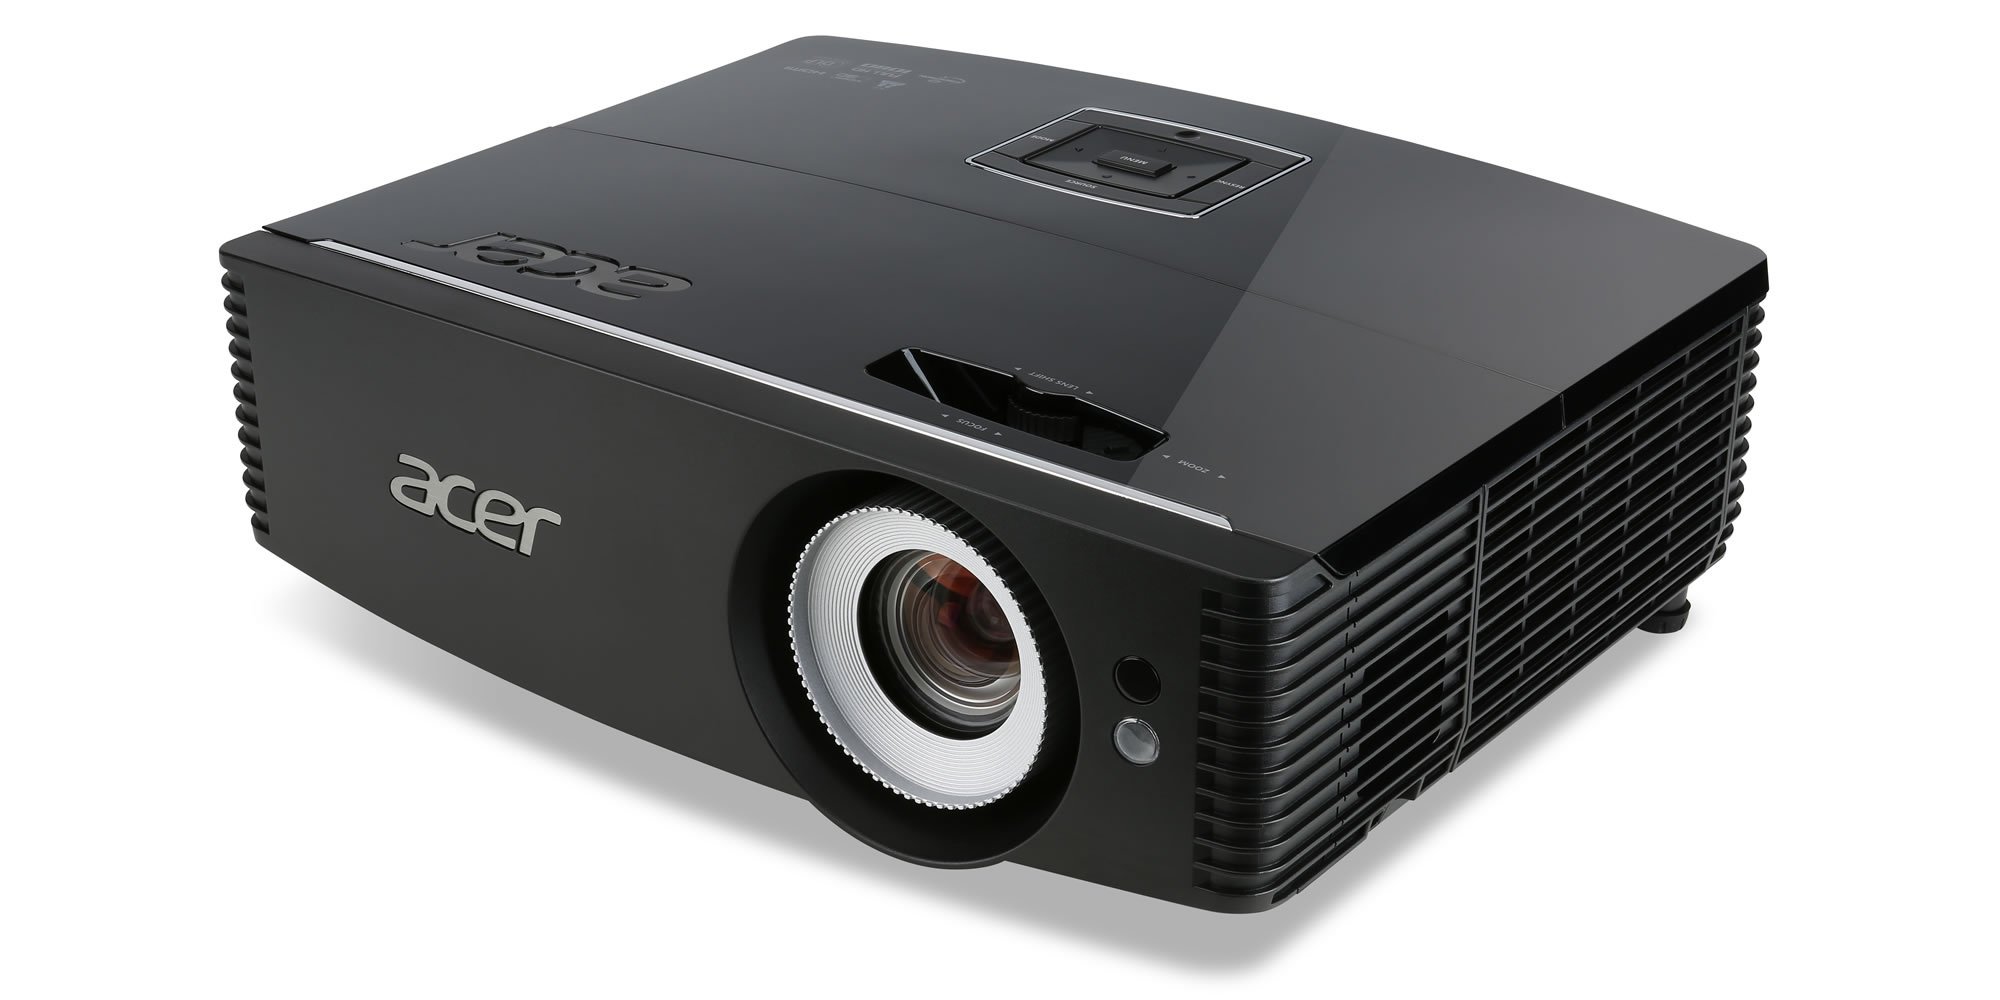  Проектор Acer P6500 (DLP, Full HD, 5000 ANSI Lm) (MR.JMG11.001) фото1